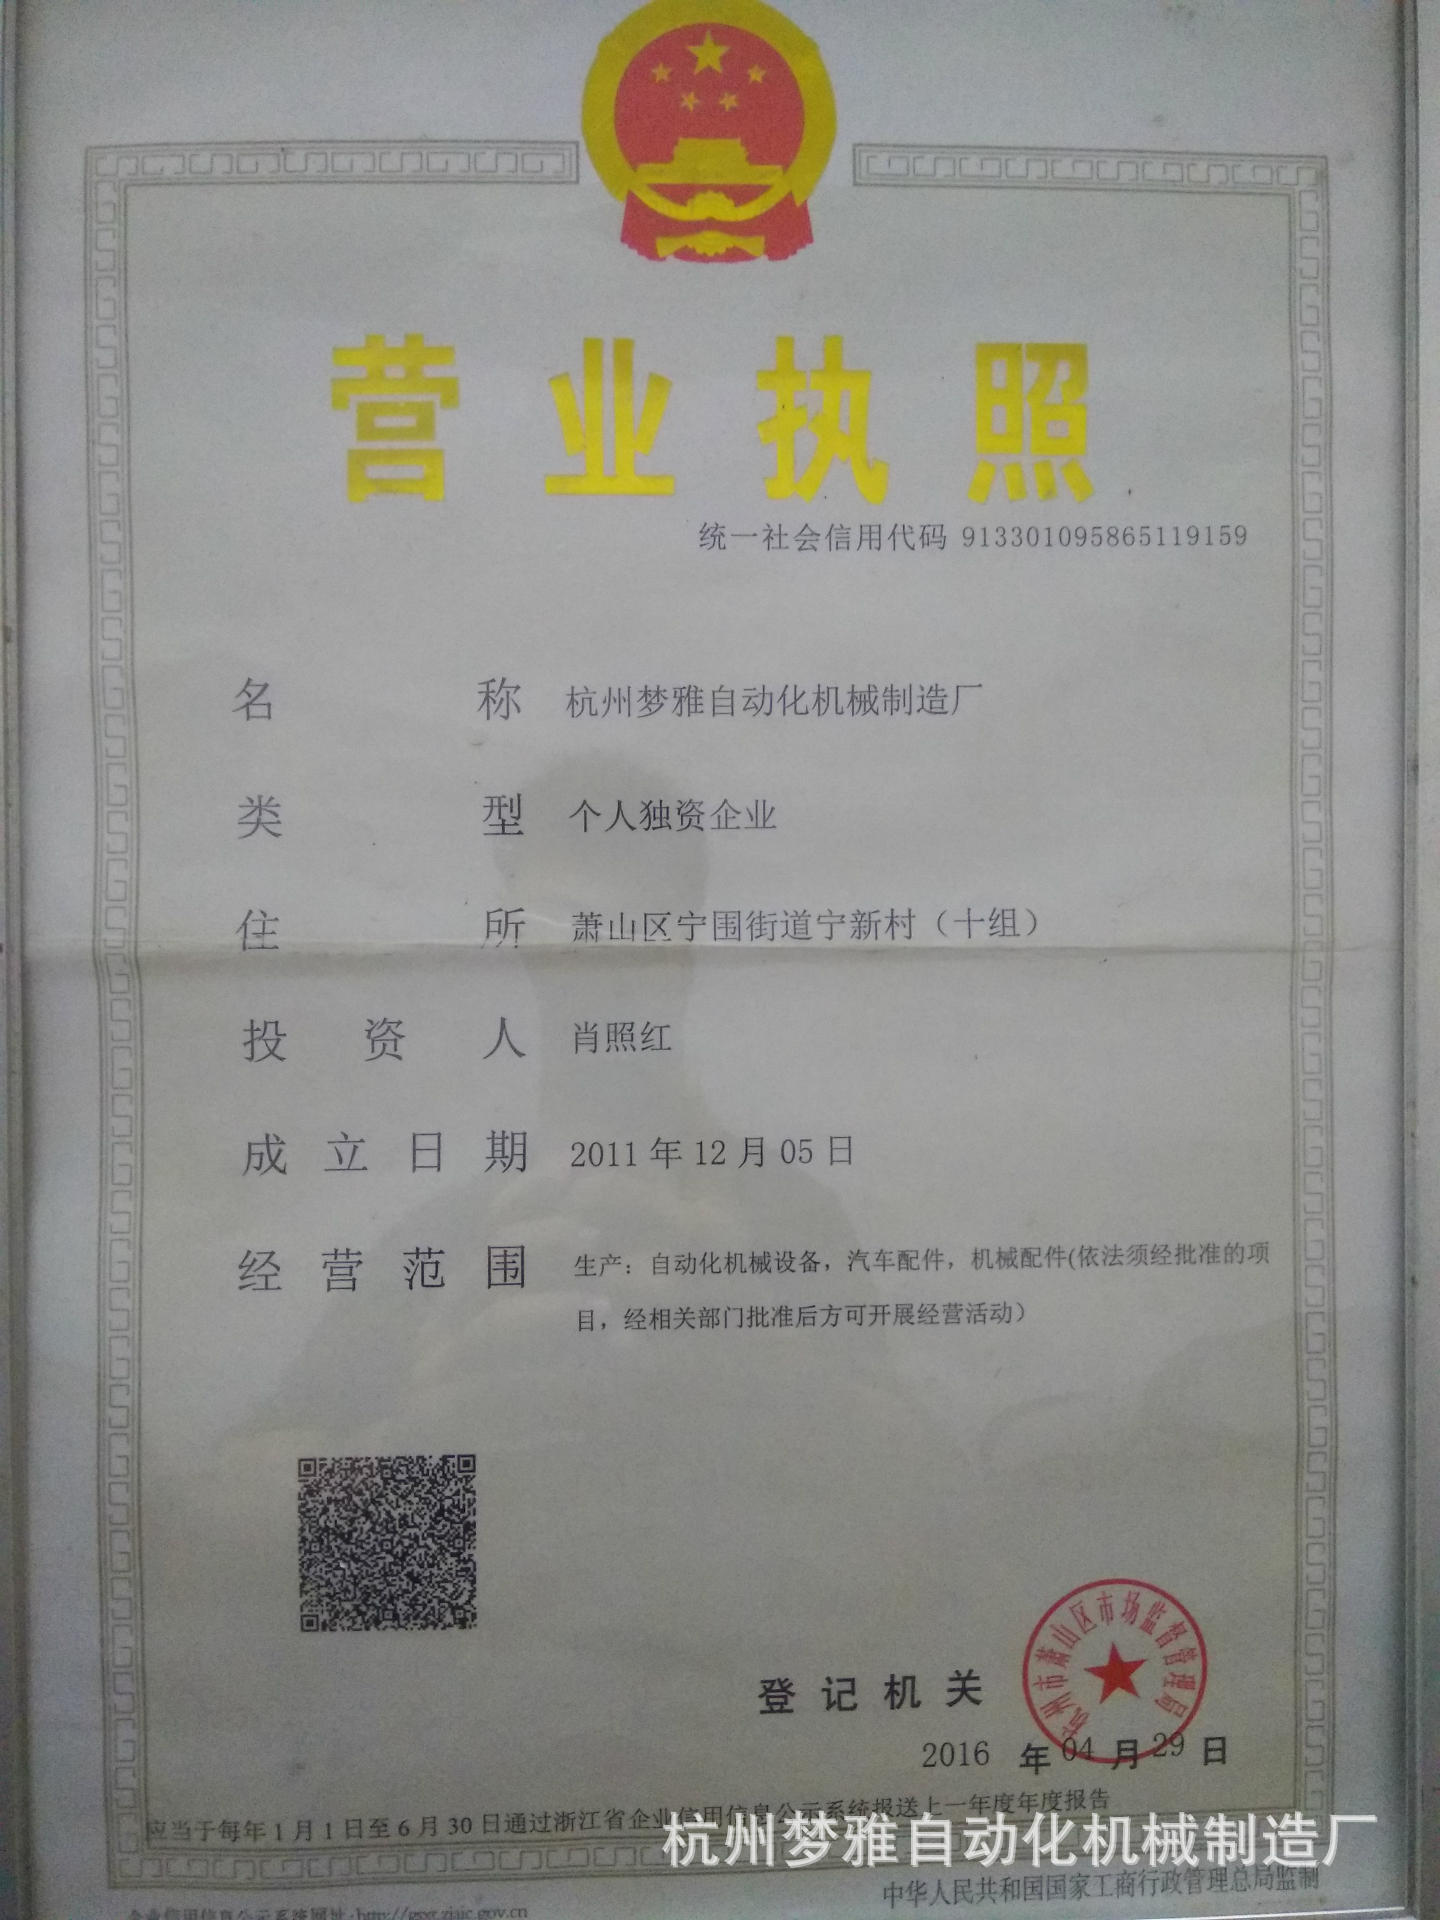 杭州梦雅自动化机械制造厂营业执照